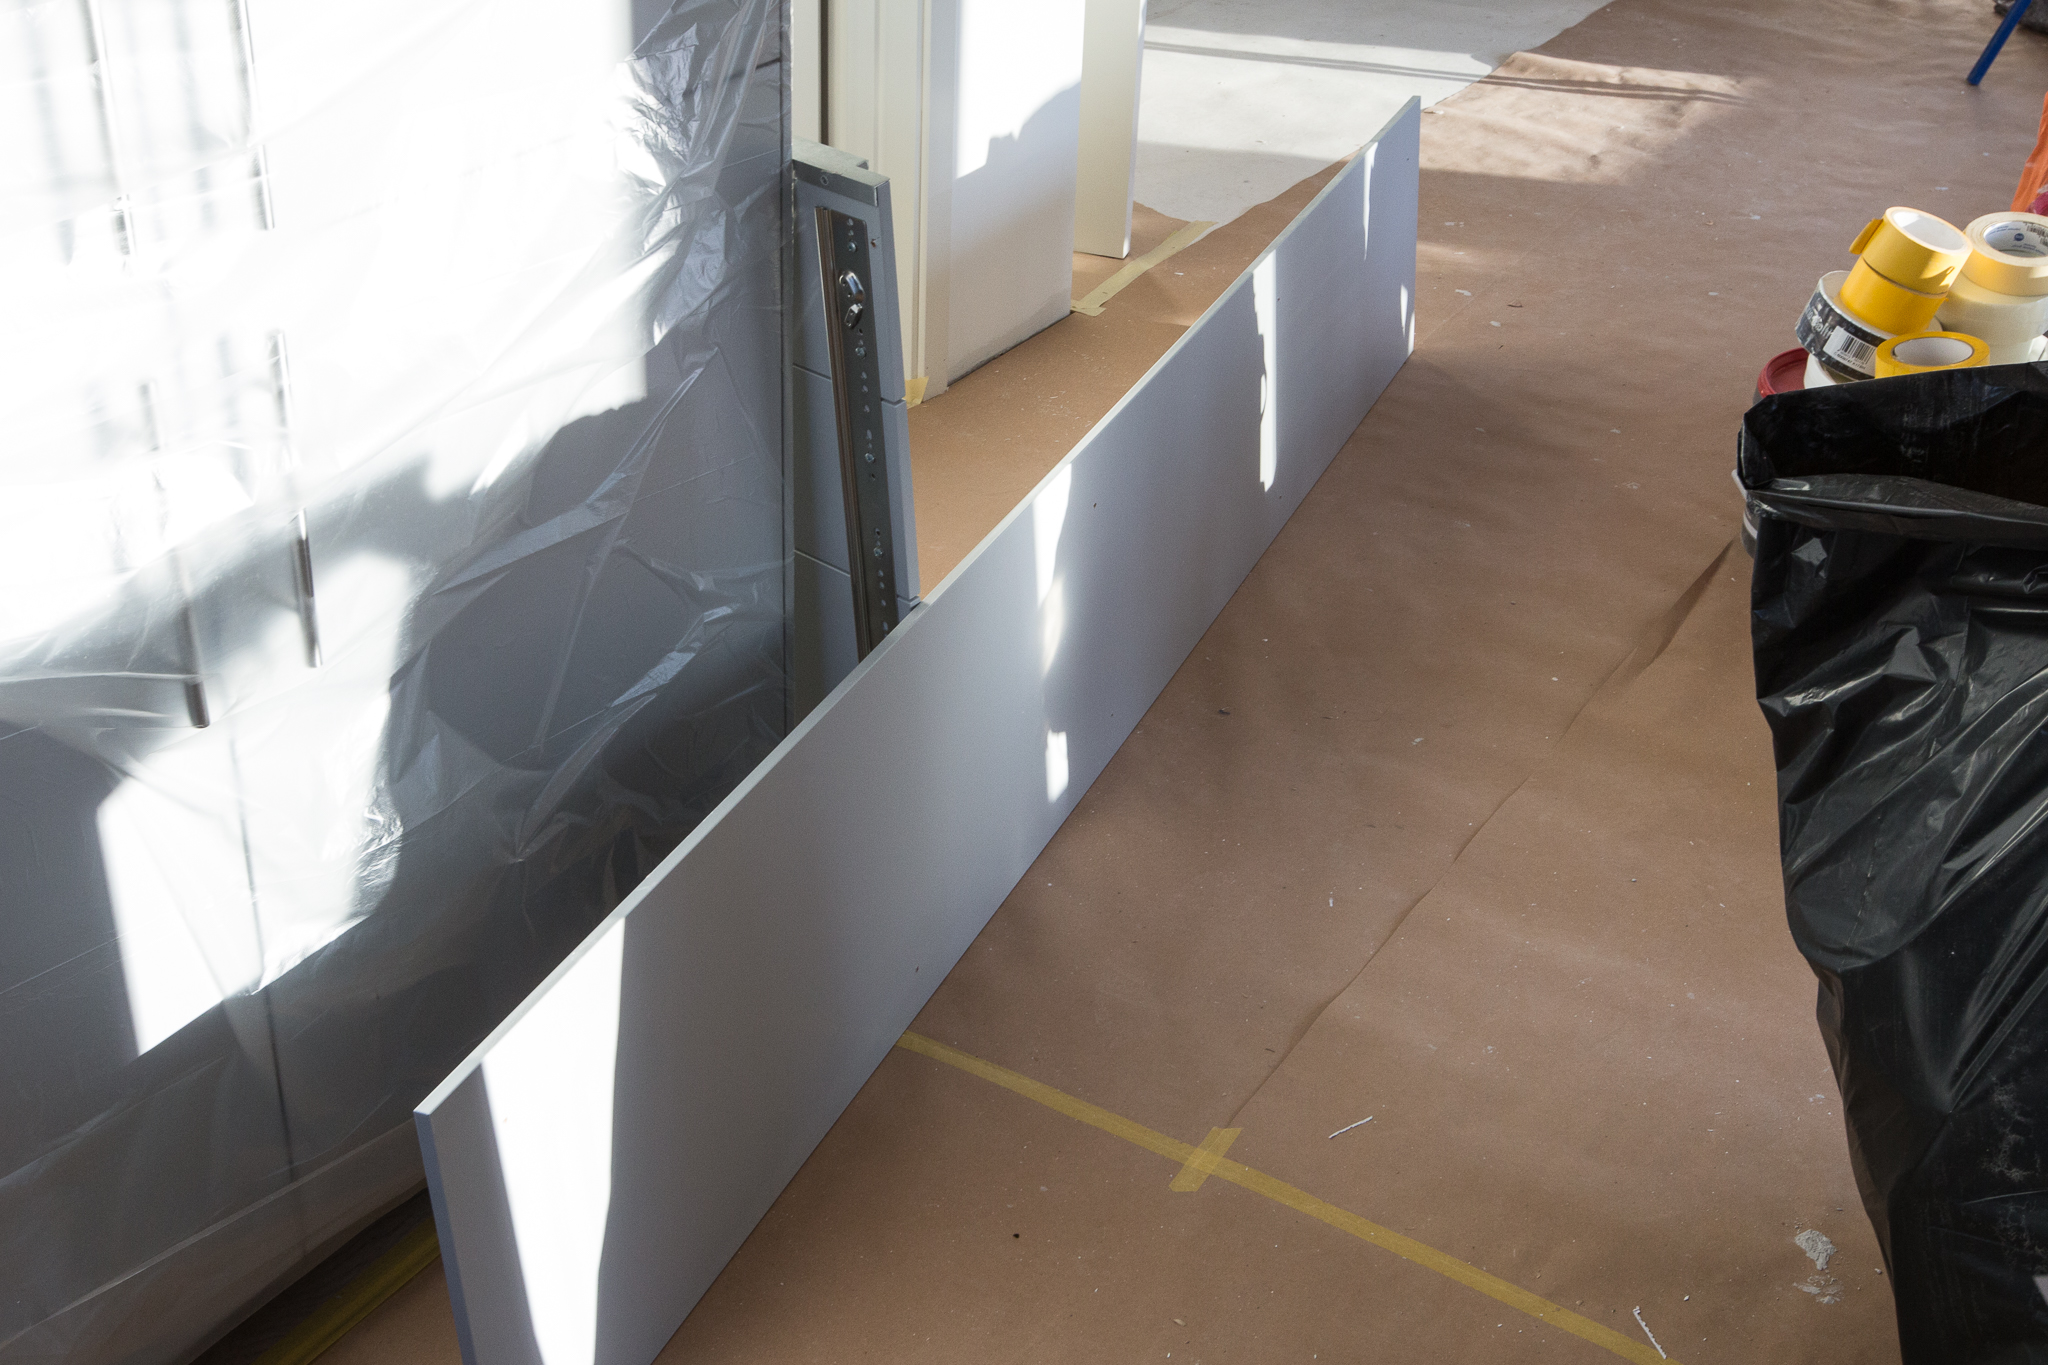  IKEA VEDDINGE täcksida (grå NCS-S 2502B) som ska sitta under väggskåpen. 